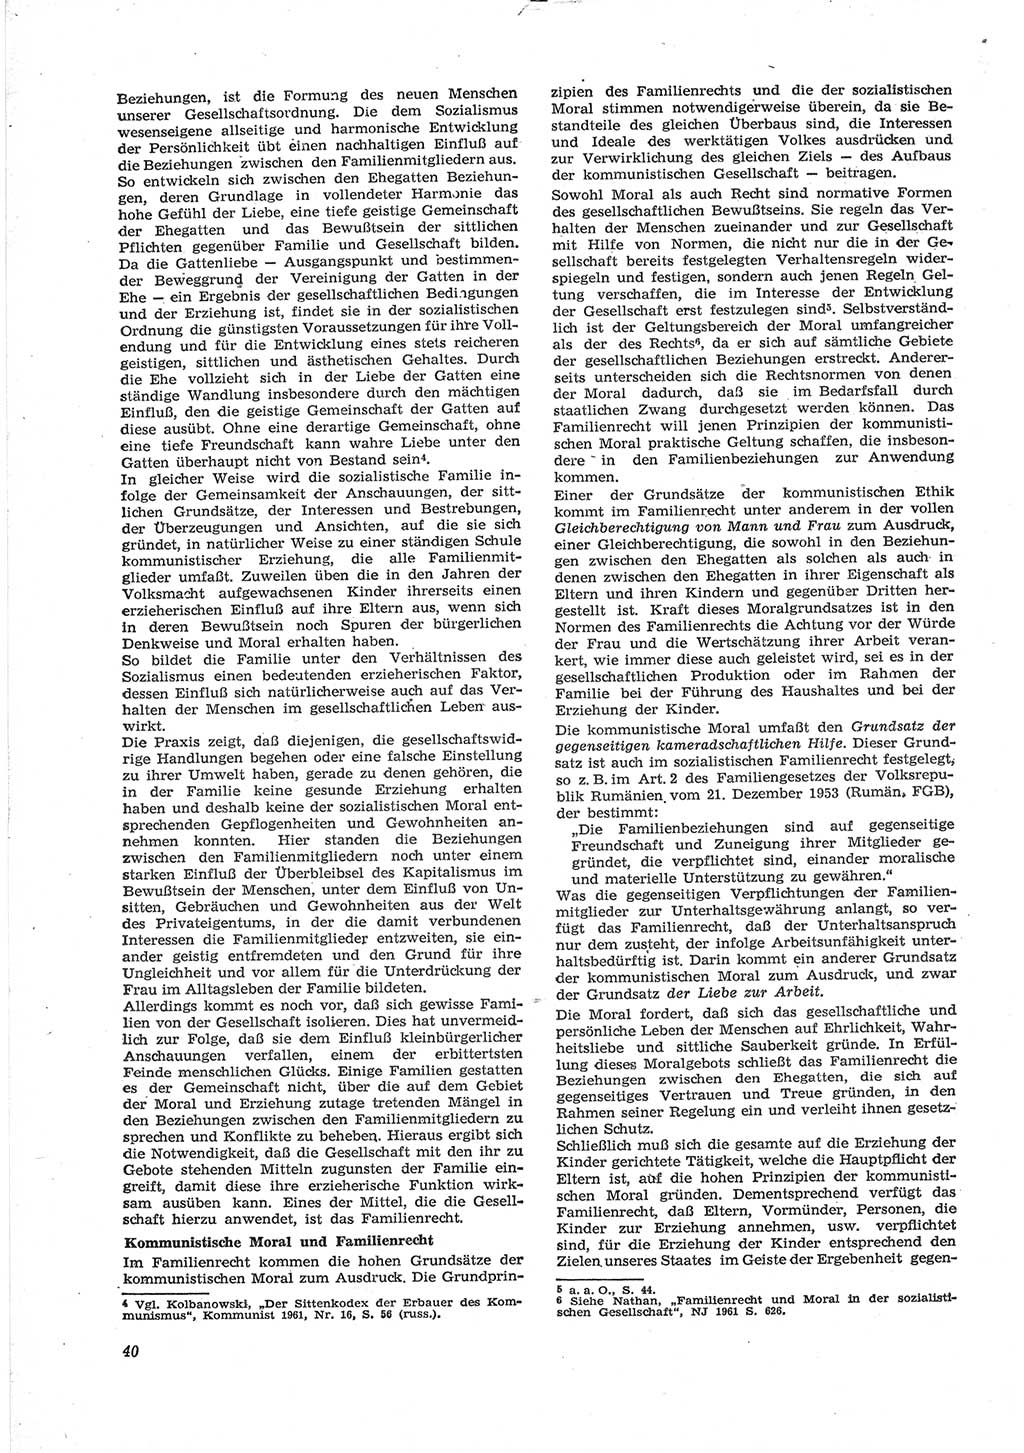 Neue Justiz (NJ), Zeitschrift für Recht und Rechtswissenschaft [Deutsche Demokratische Republik (DDR)], 18. Jahrgang 1964, Seite 40 (NJ DDR 1964, S. 40)